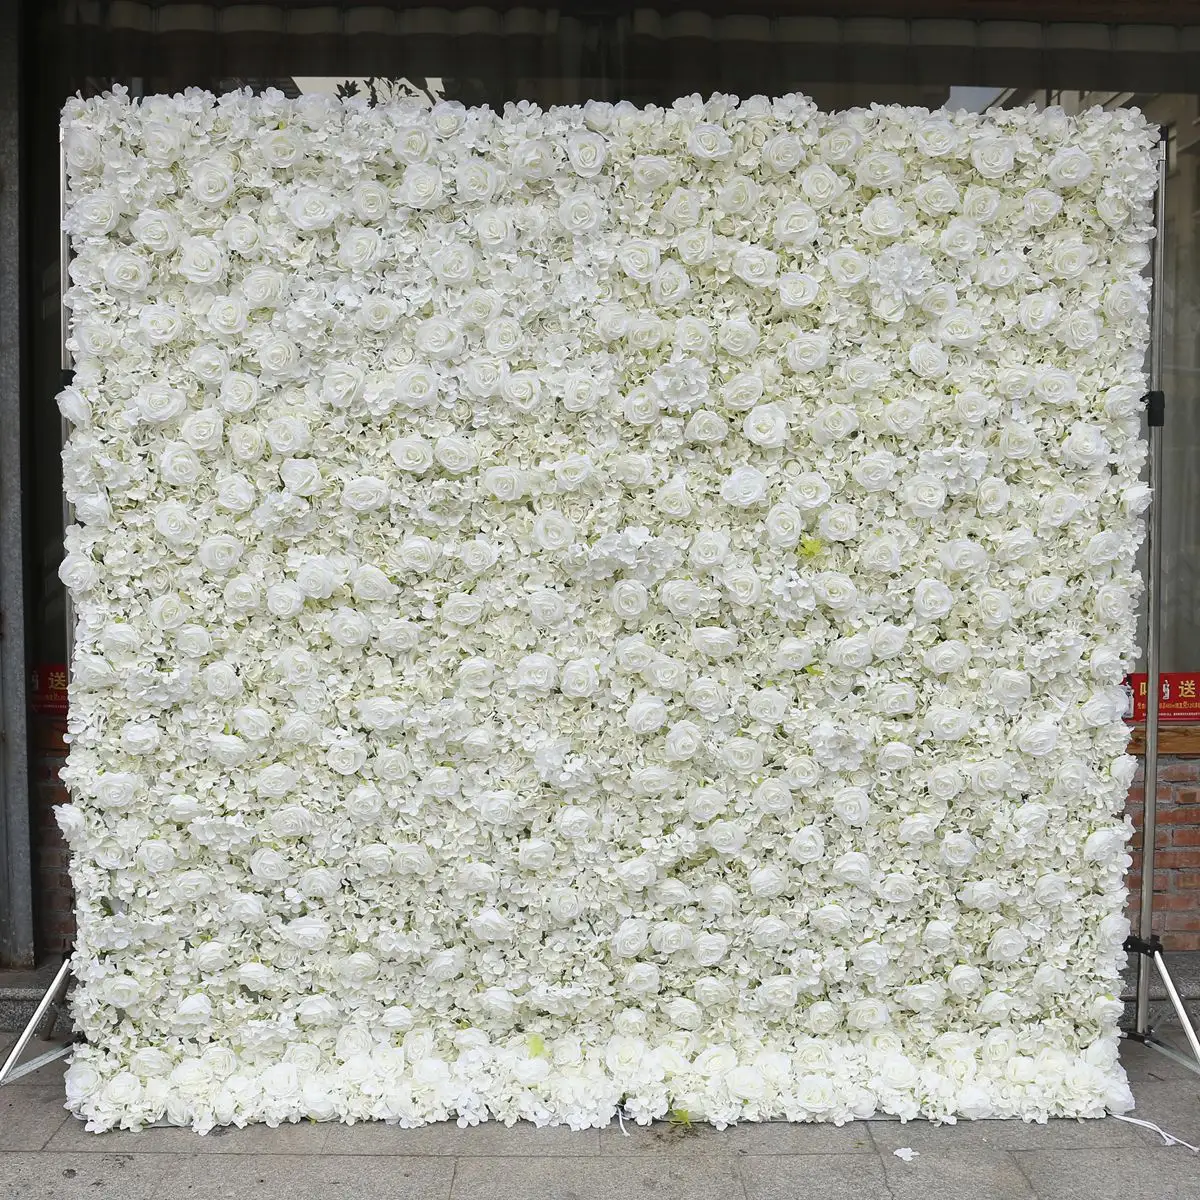 Untere Wand paneele, 12x16 Zoll Art Artificial Hydrangea Flower Wall Hintergrund White Flower Wall Decor für Hochzeits feier